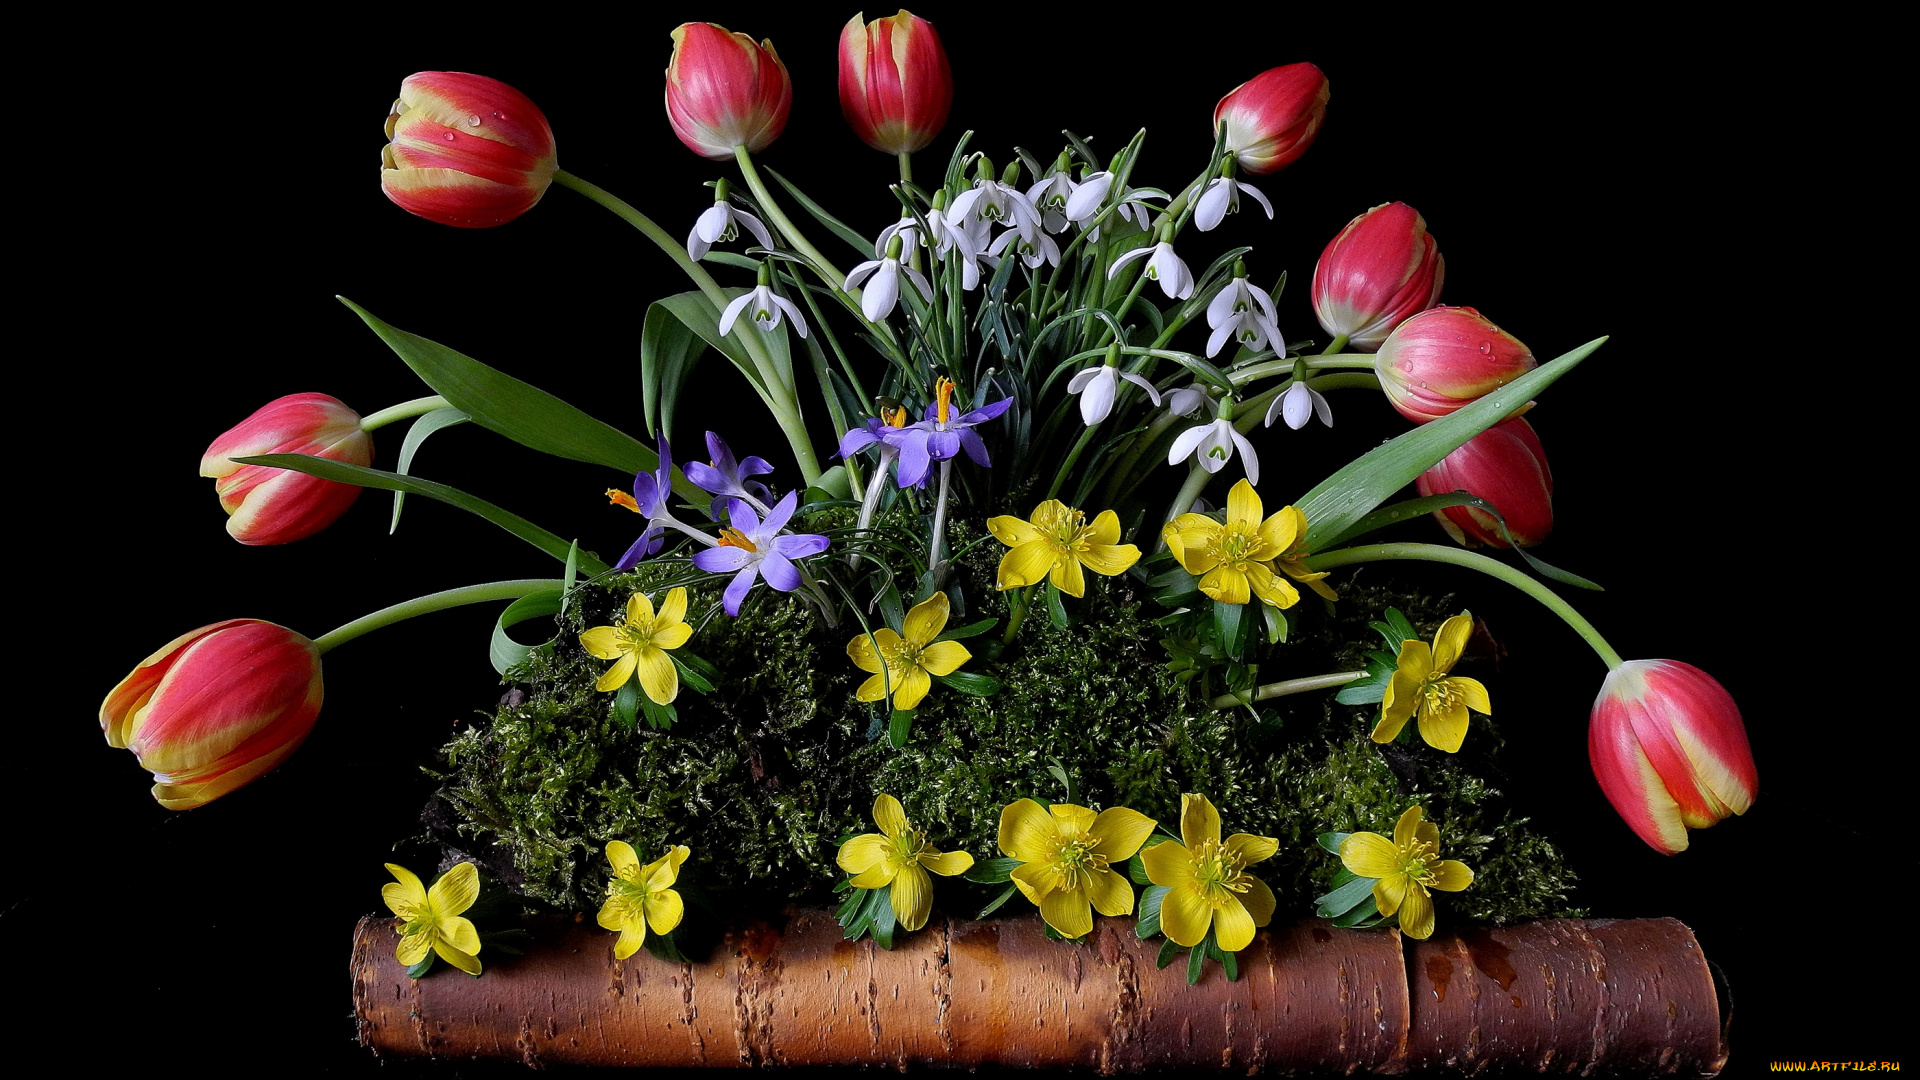 цветы, разные, вместе, подснежники, лютики, крокусы, тюльпаны, мох, береста, композиция